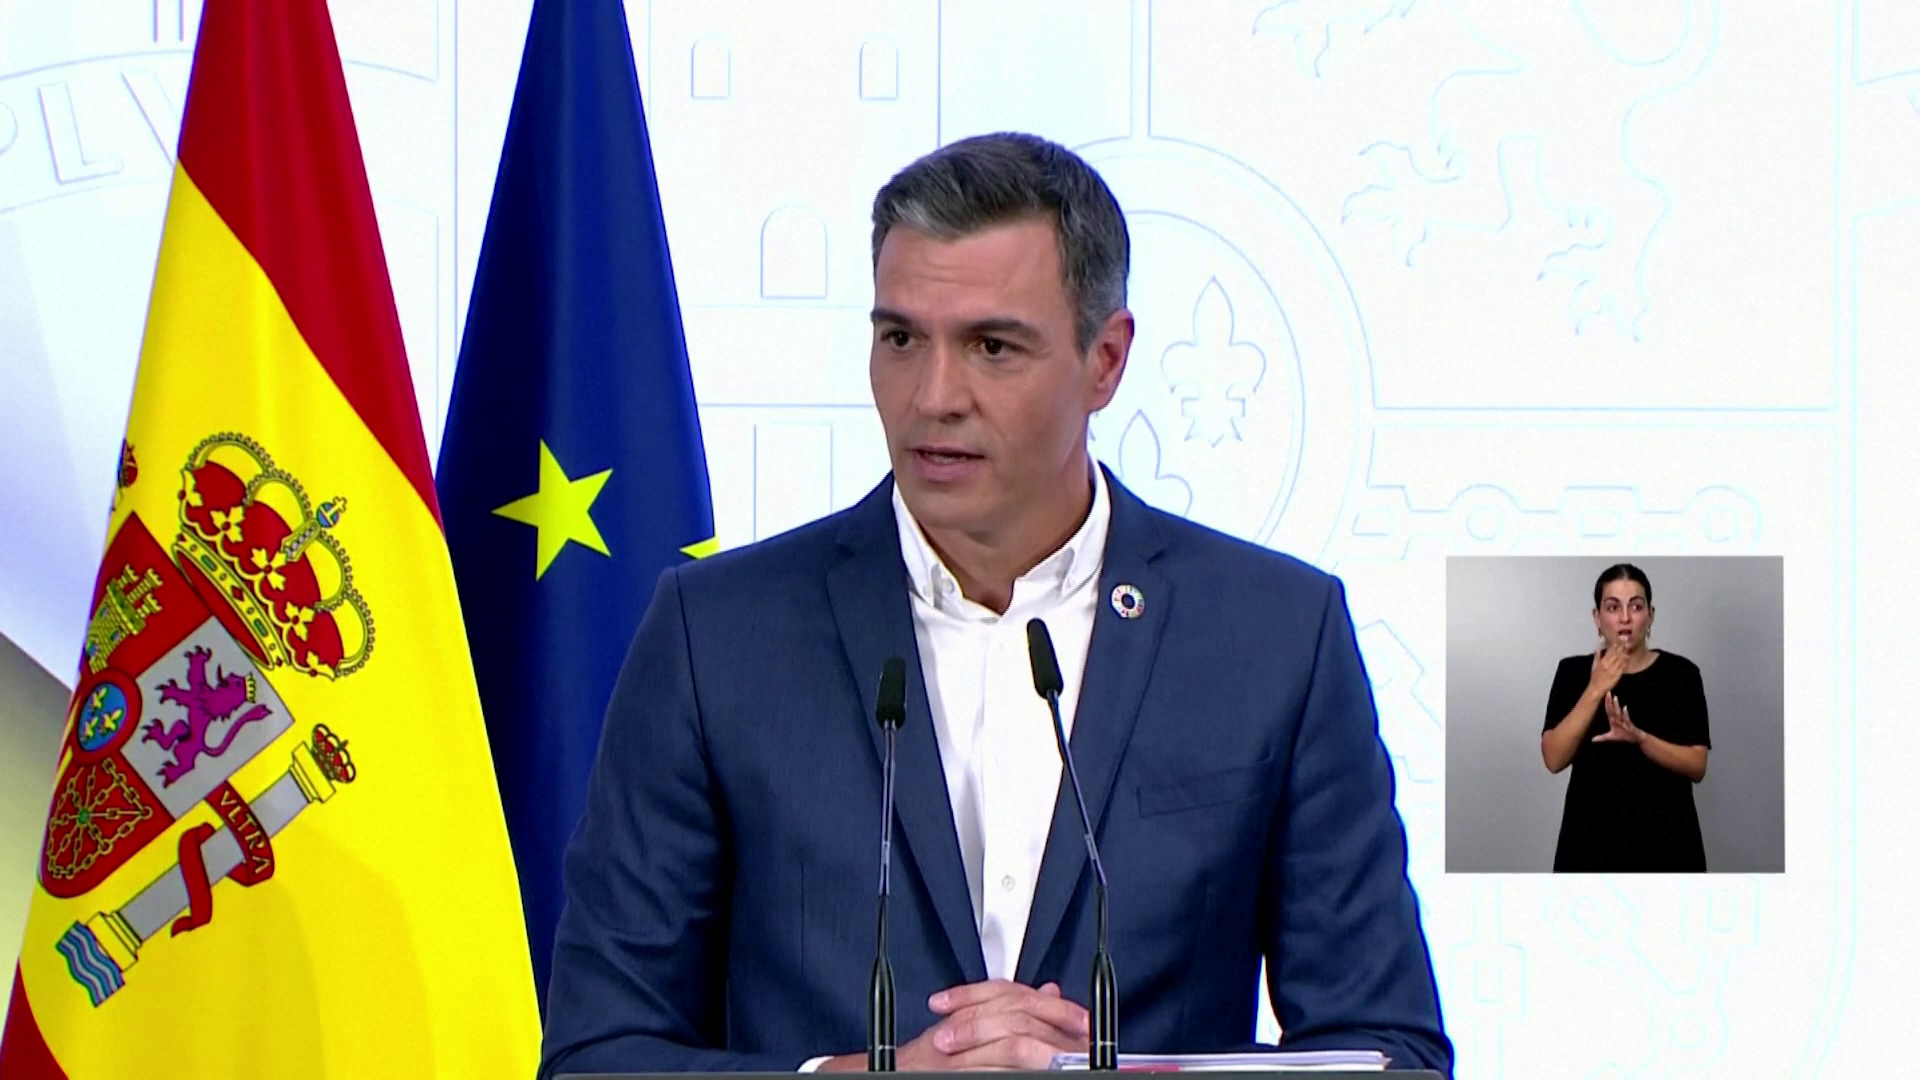 A nyakkendők levételével spórolna áramot a spanyol miniszterelnök